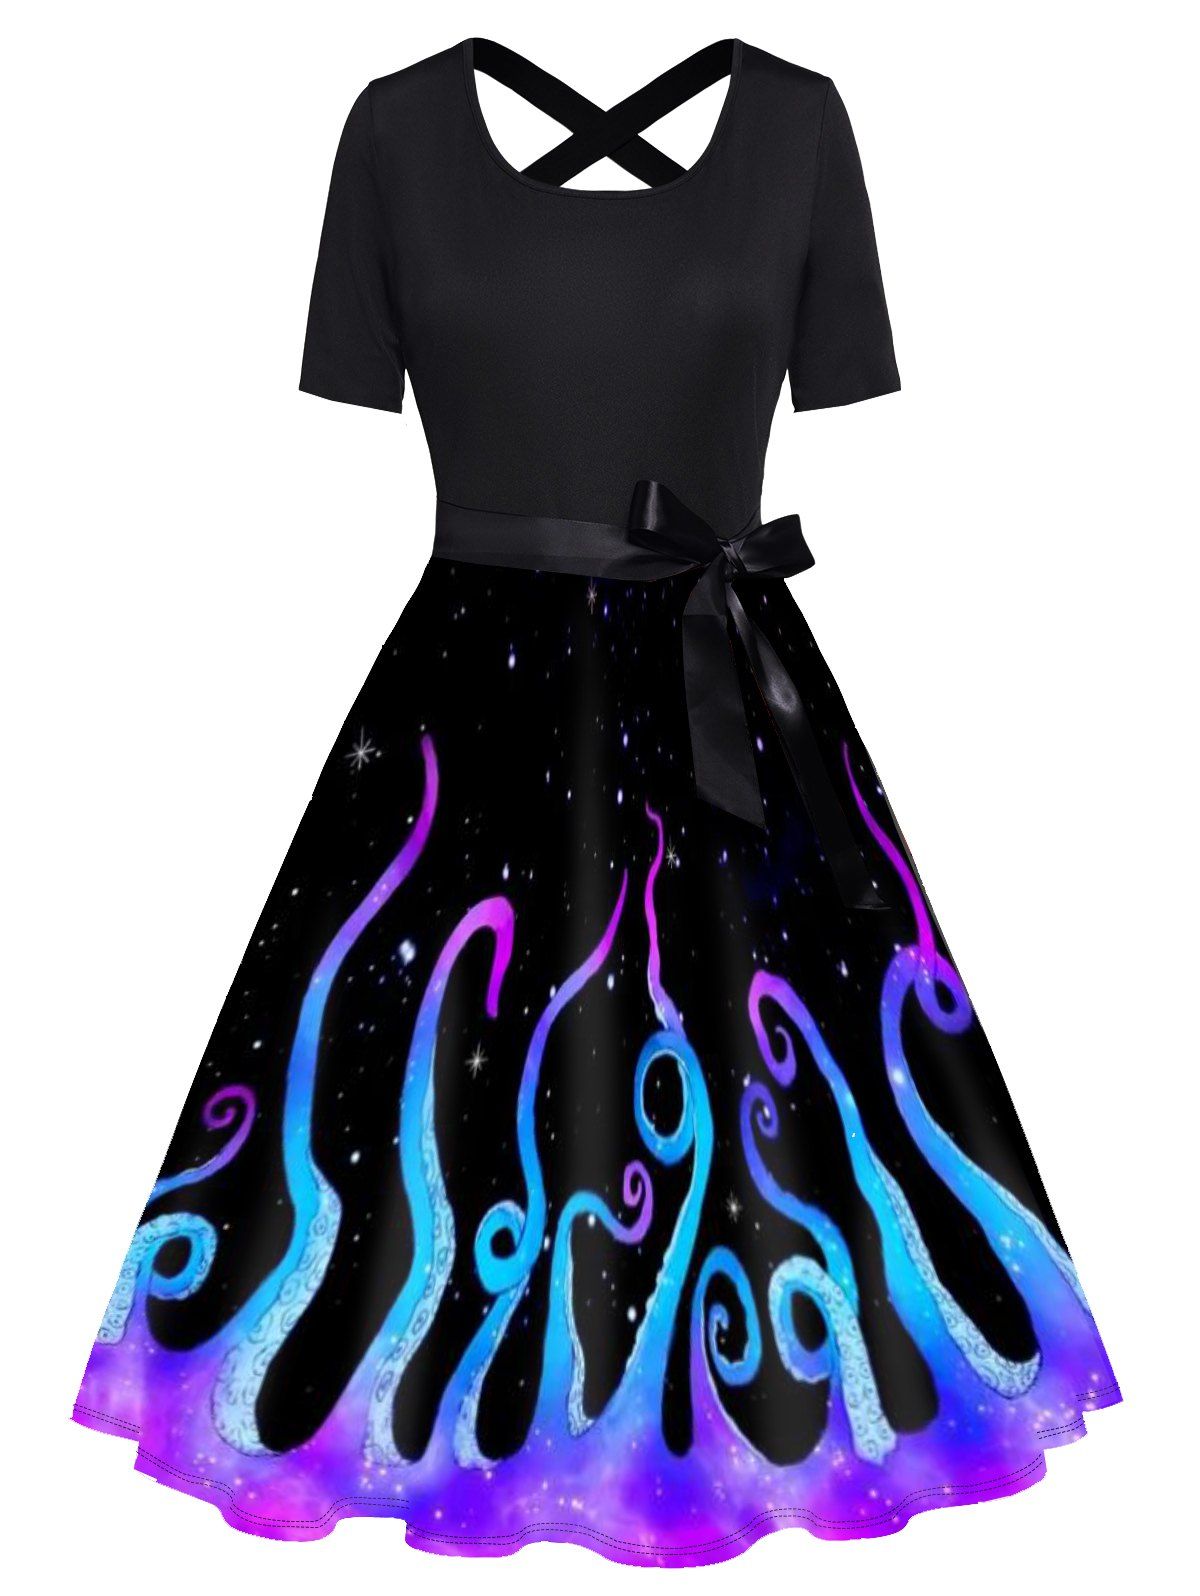 Galaxy Octopus Print Short Sleeve Dress Bowknot Cross High Waist A Line Dress - BLACK XXL